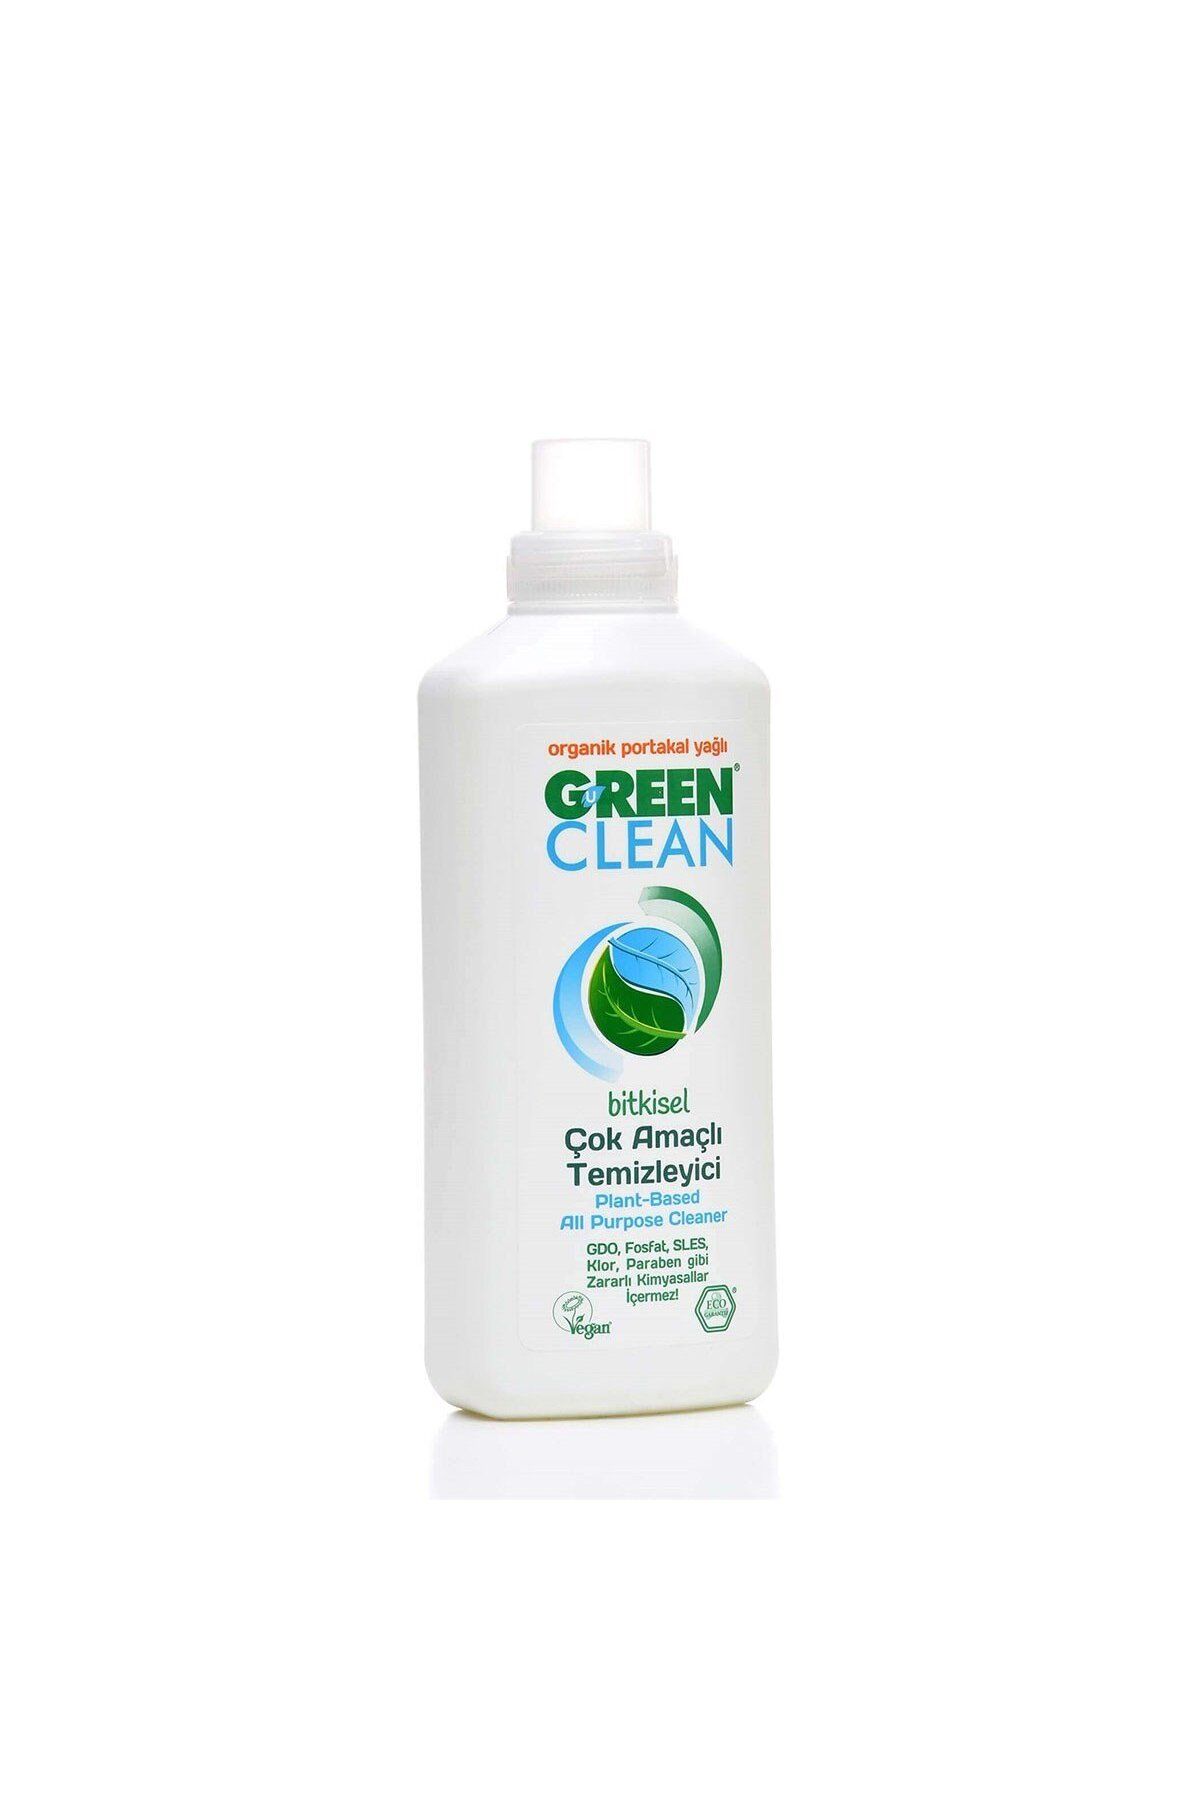 Green Clean Bitkisel Çok Amaçlı Yüzey Temizleyici 1lt